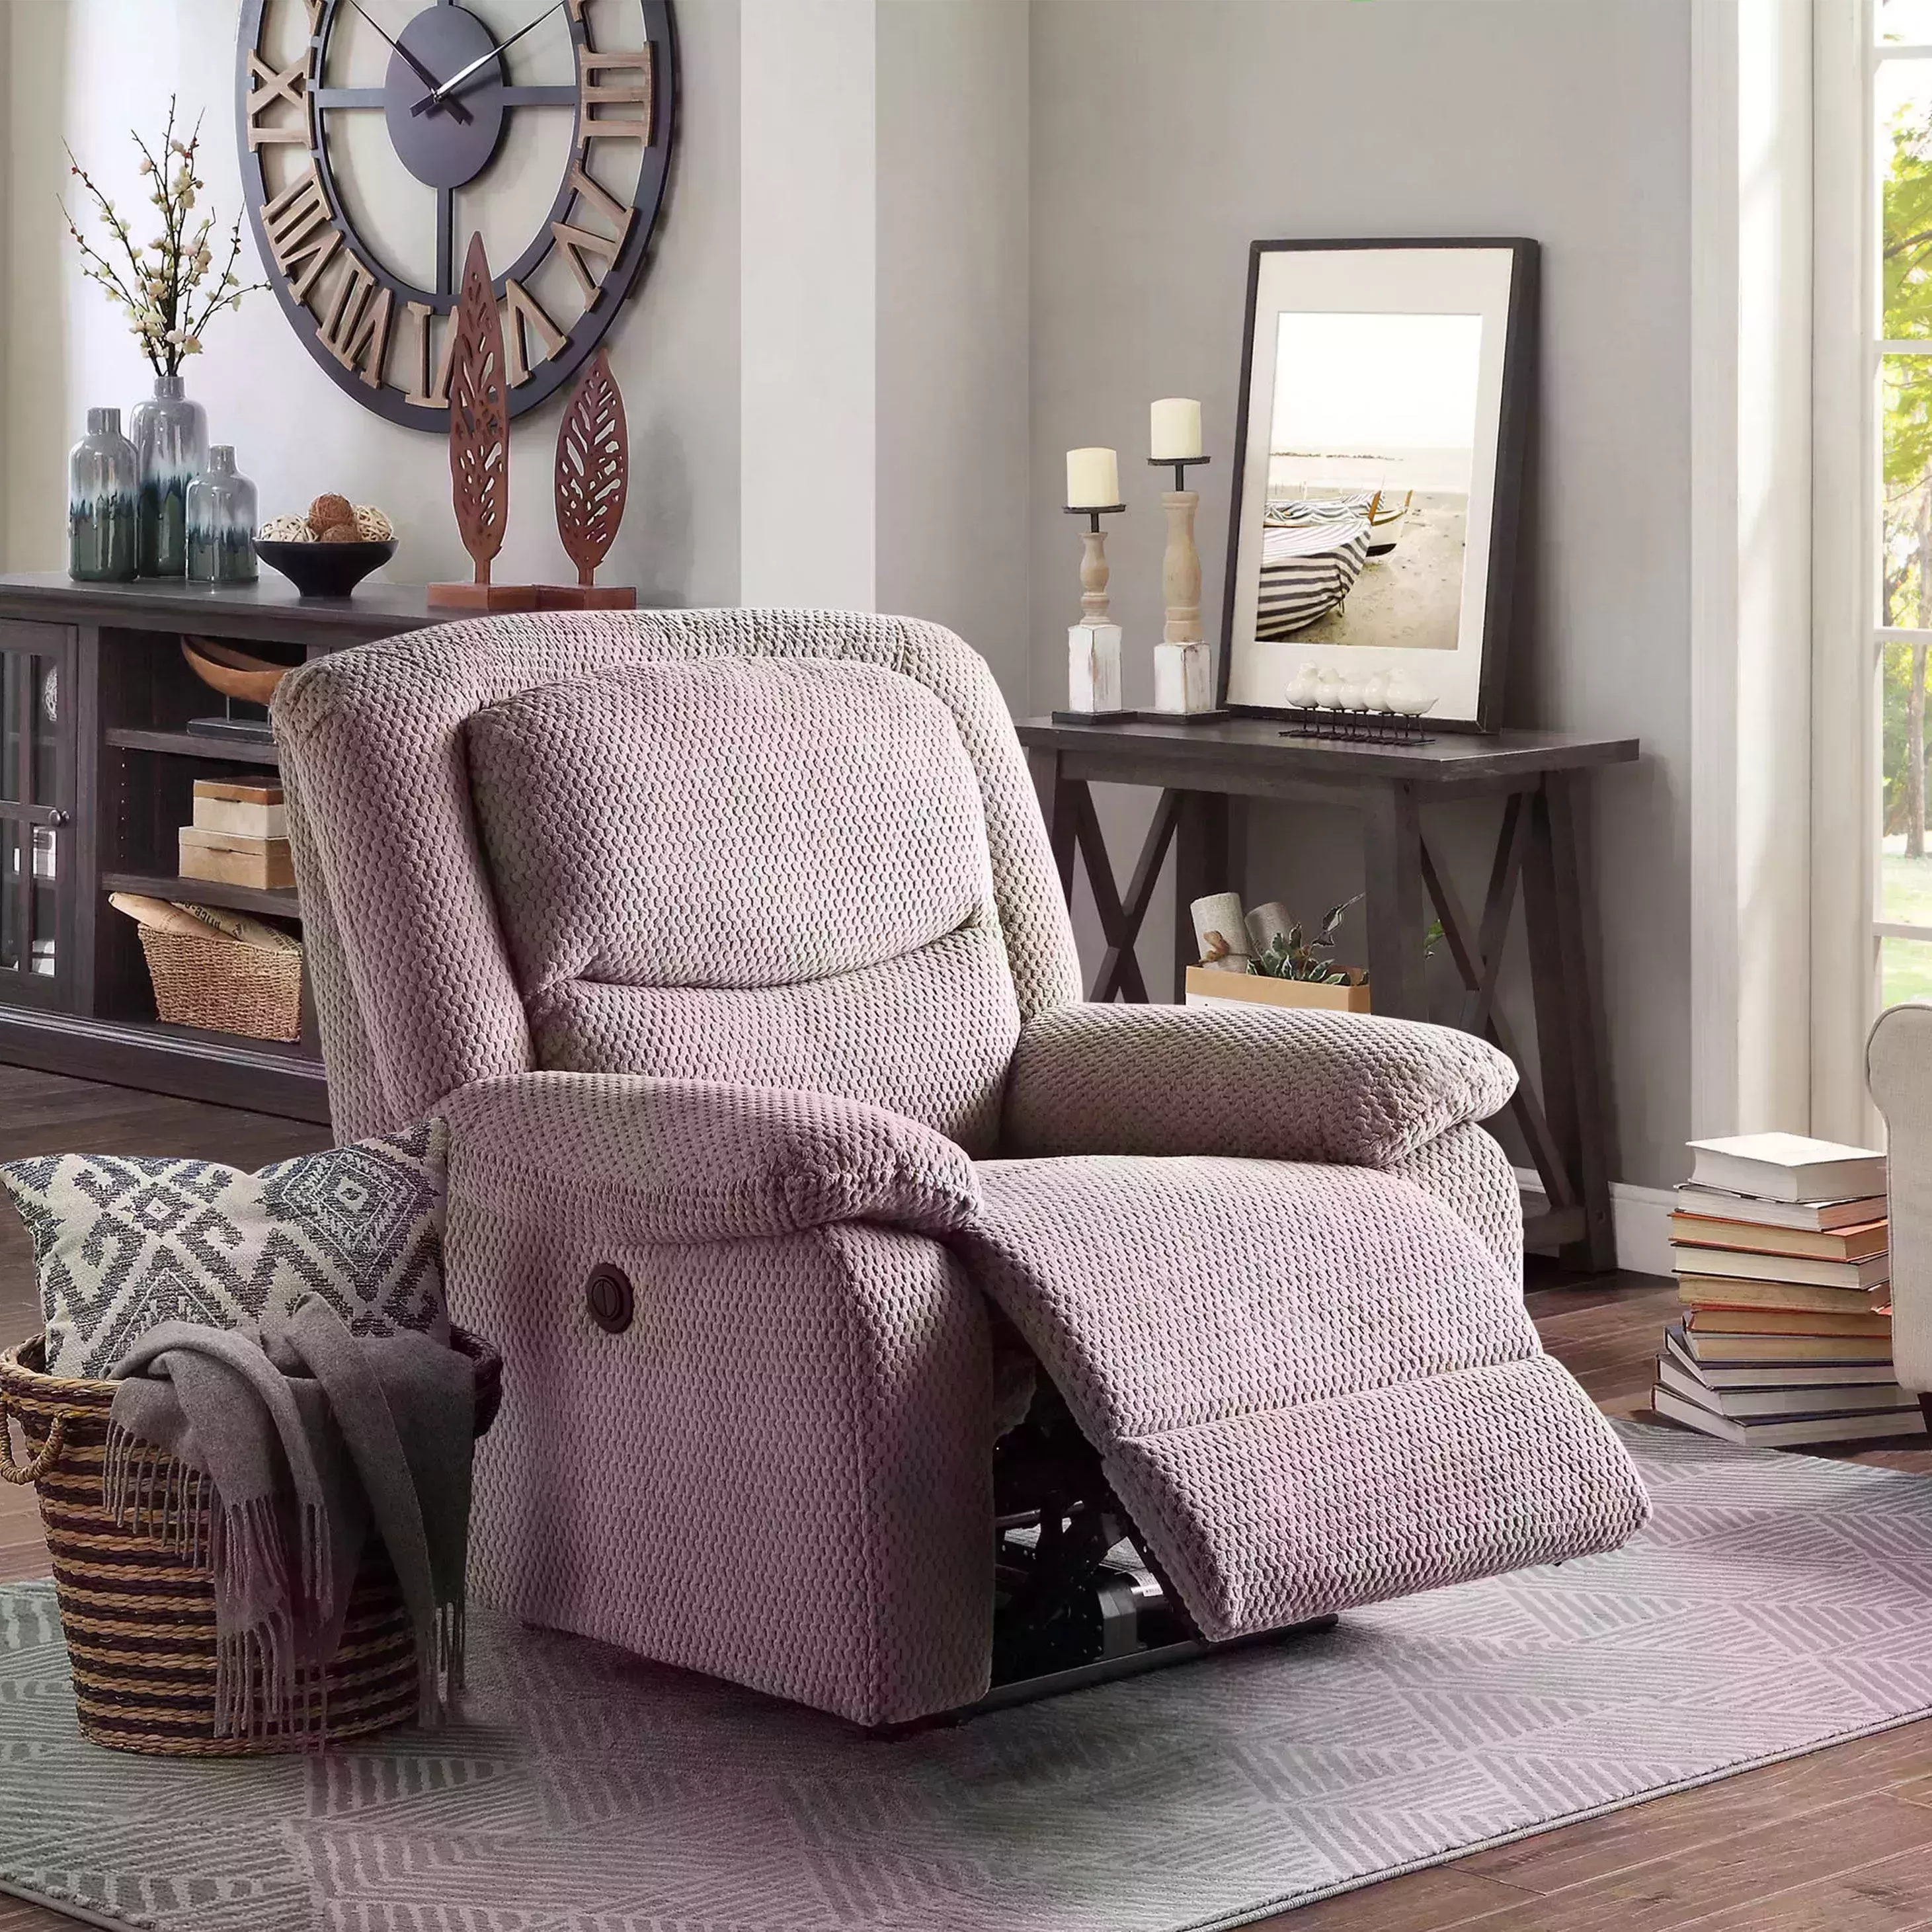 Encontramos los 11 mejores sillones reclinables para cada estilo, presupuesto y necesidad